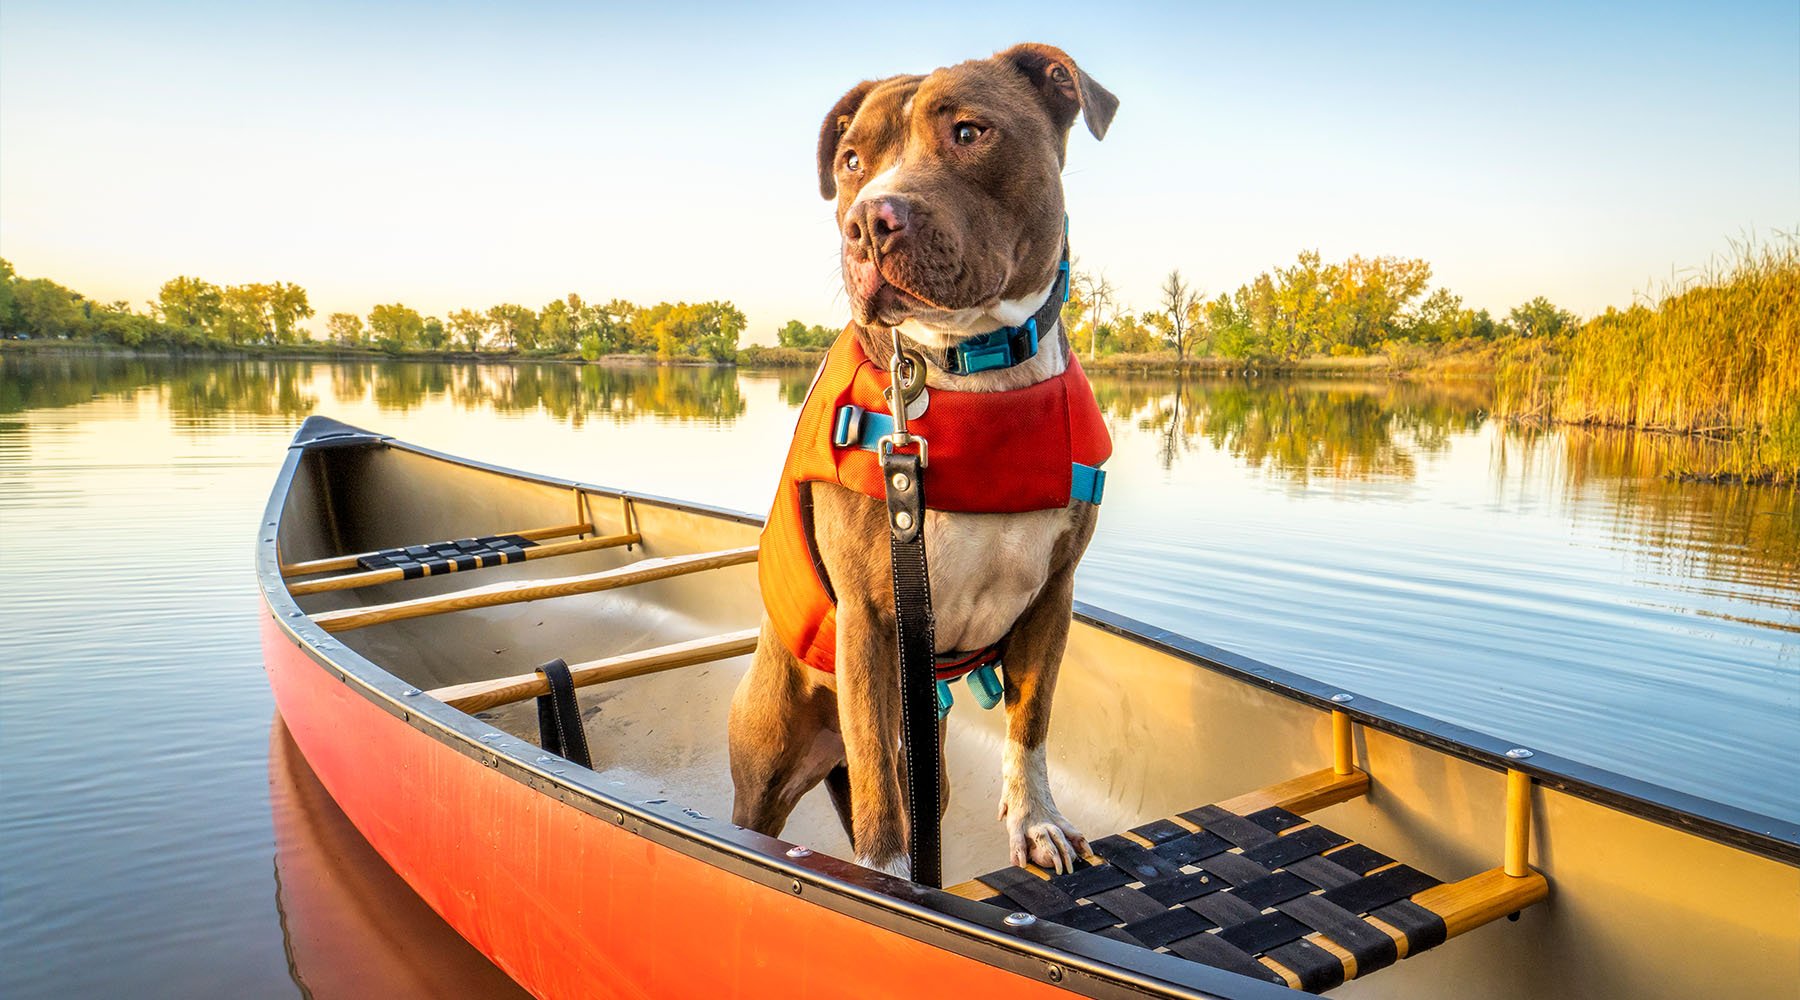 Canoe paddling with dog in life jacket